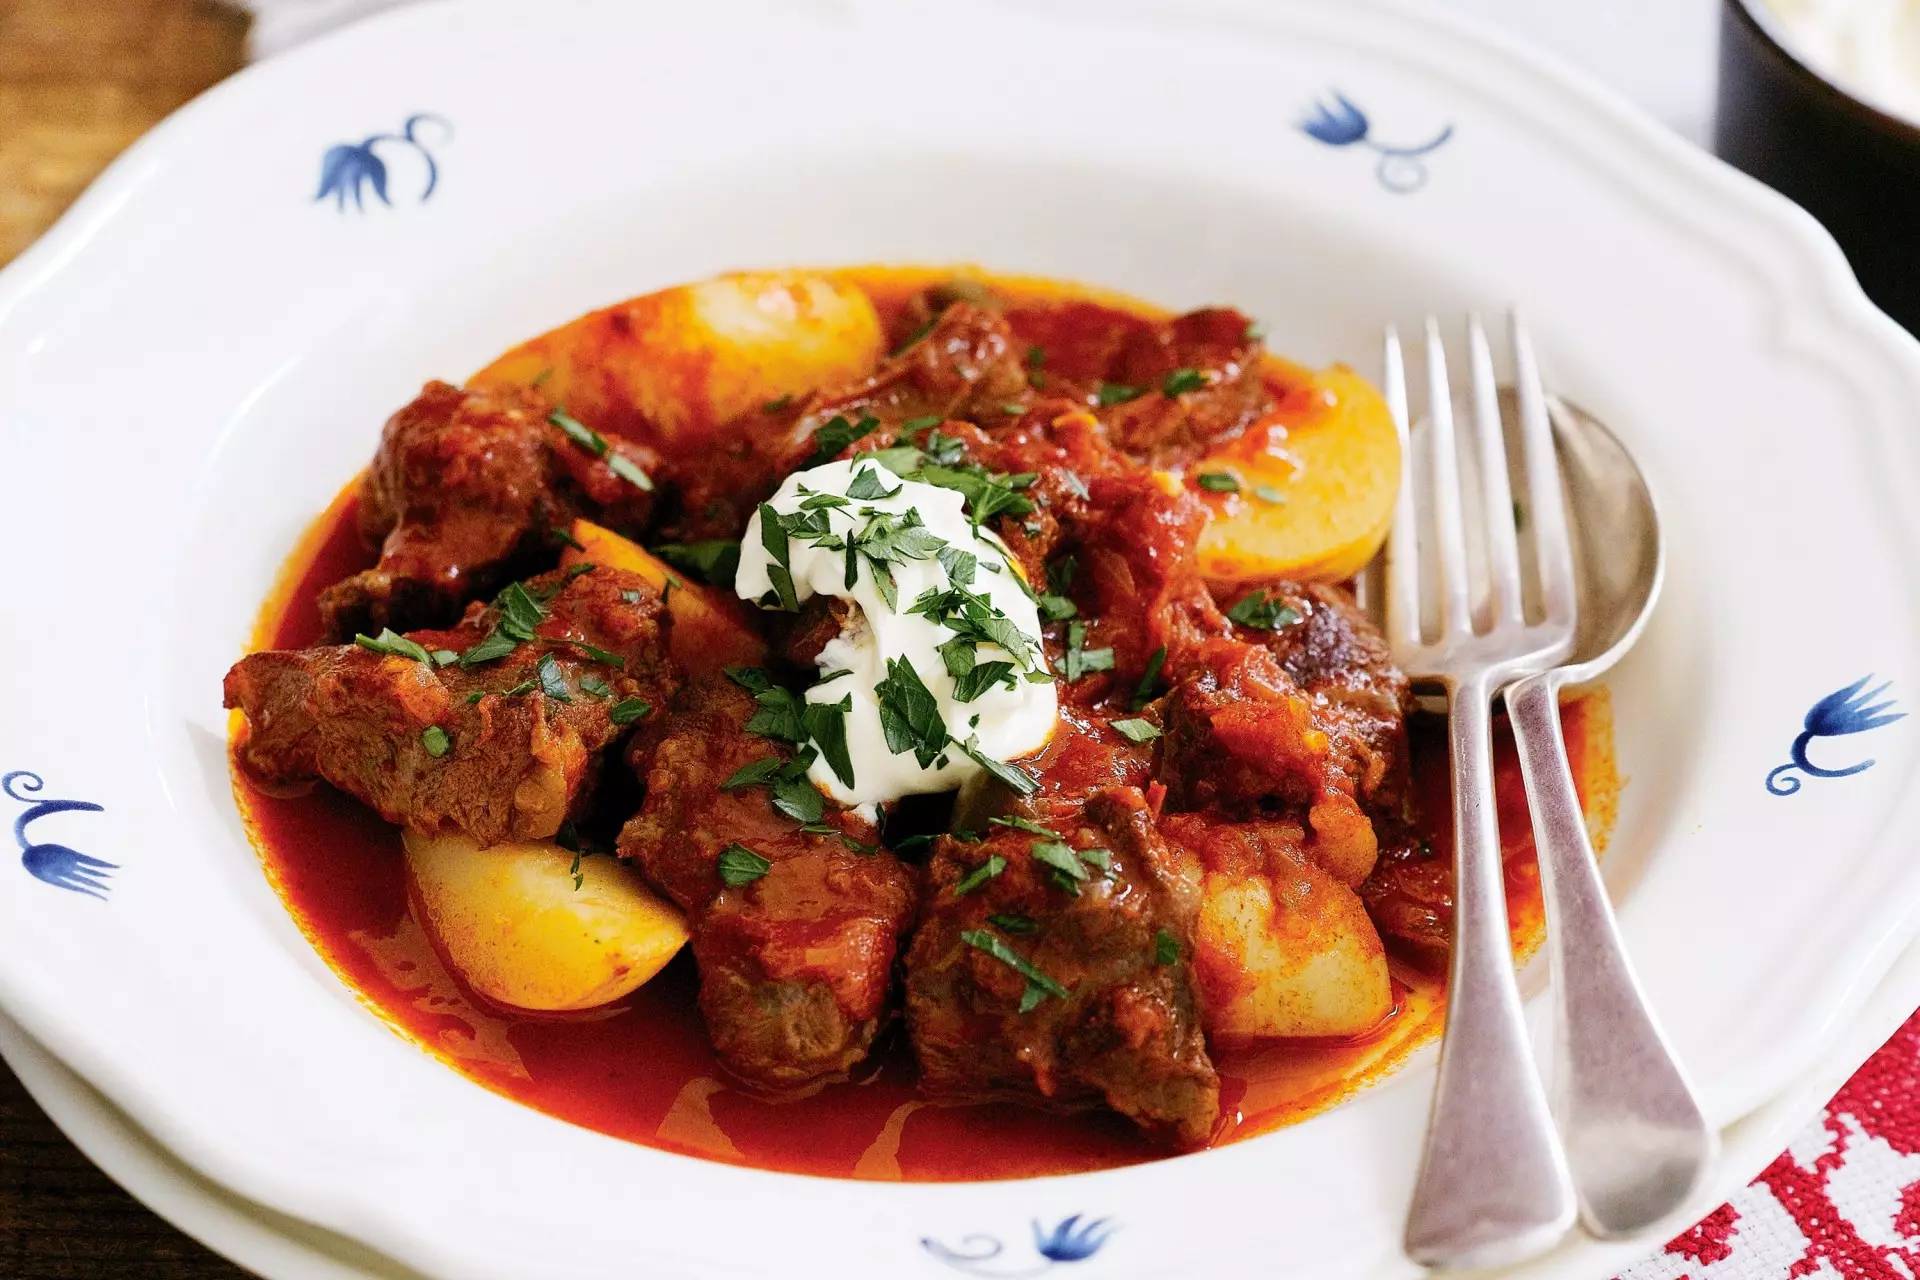 在桌上的传统匈牙利菜炖牛肉汤 库存图片. 图片 包括有 视图, 膳食, 辣椒粉, 石头, 蕃茄, 食物 - 131881959